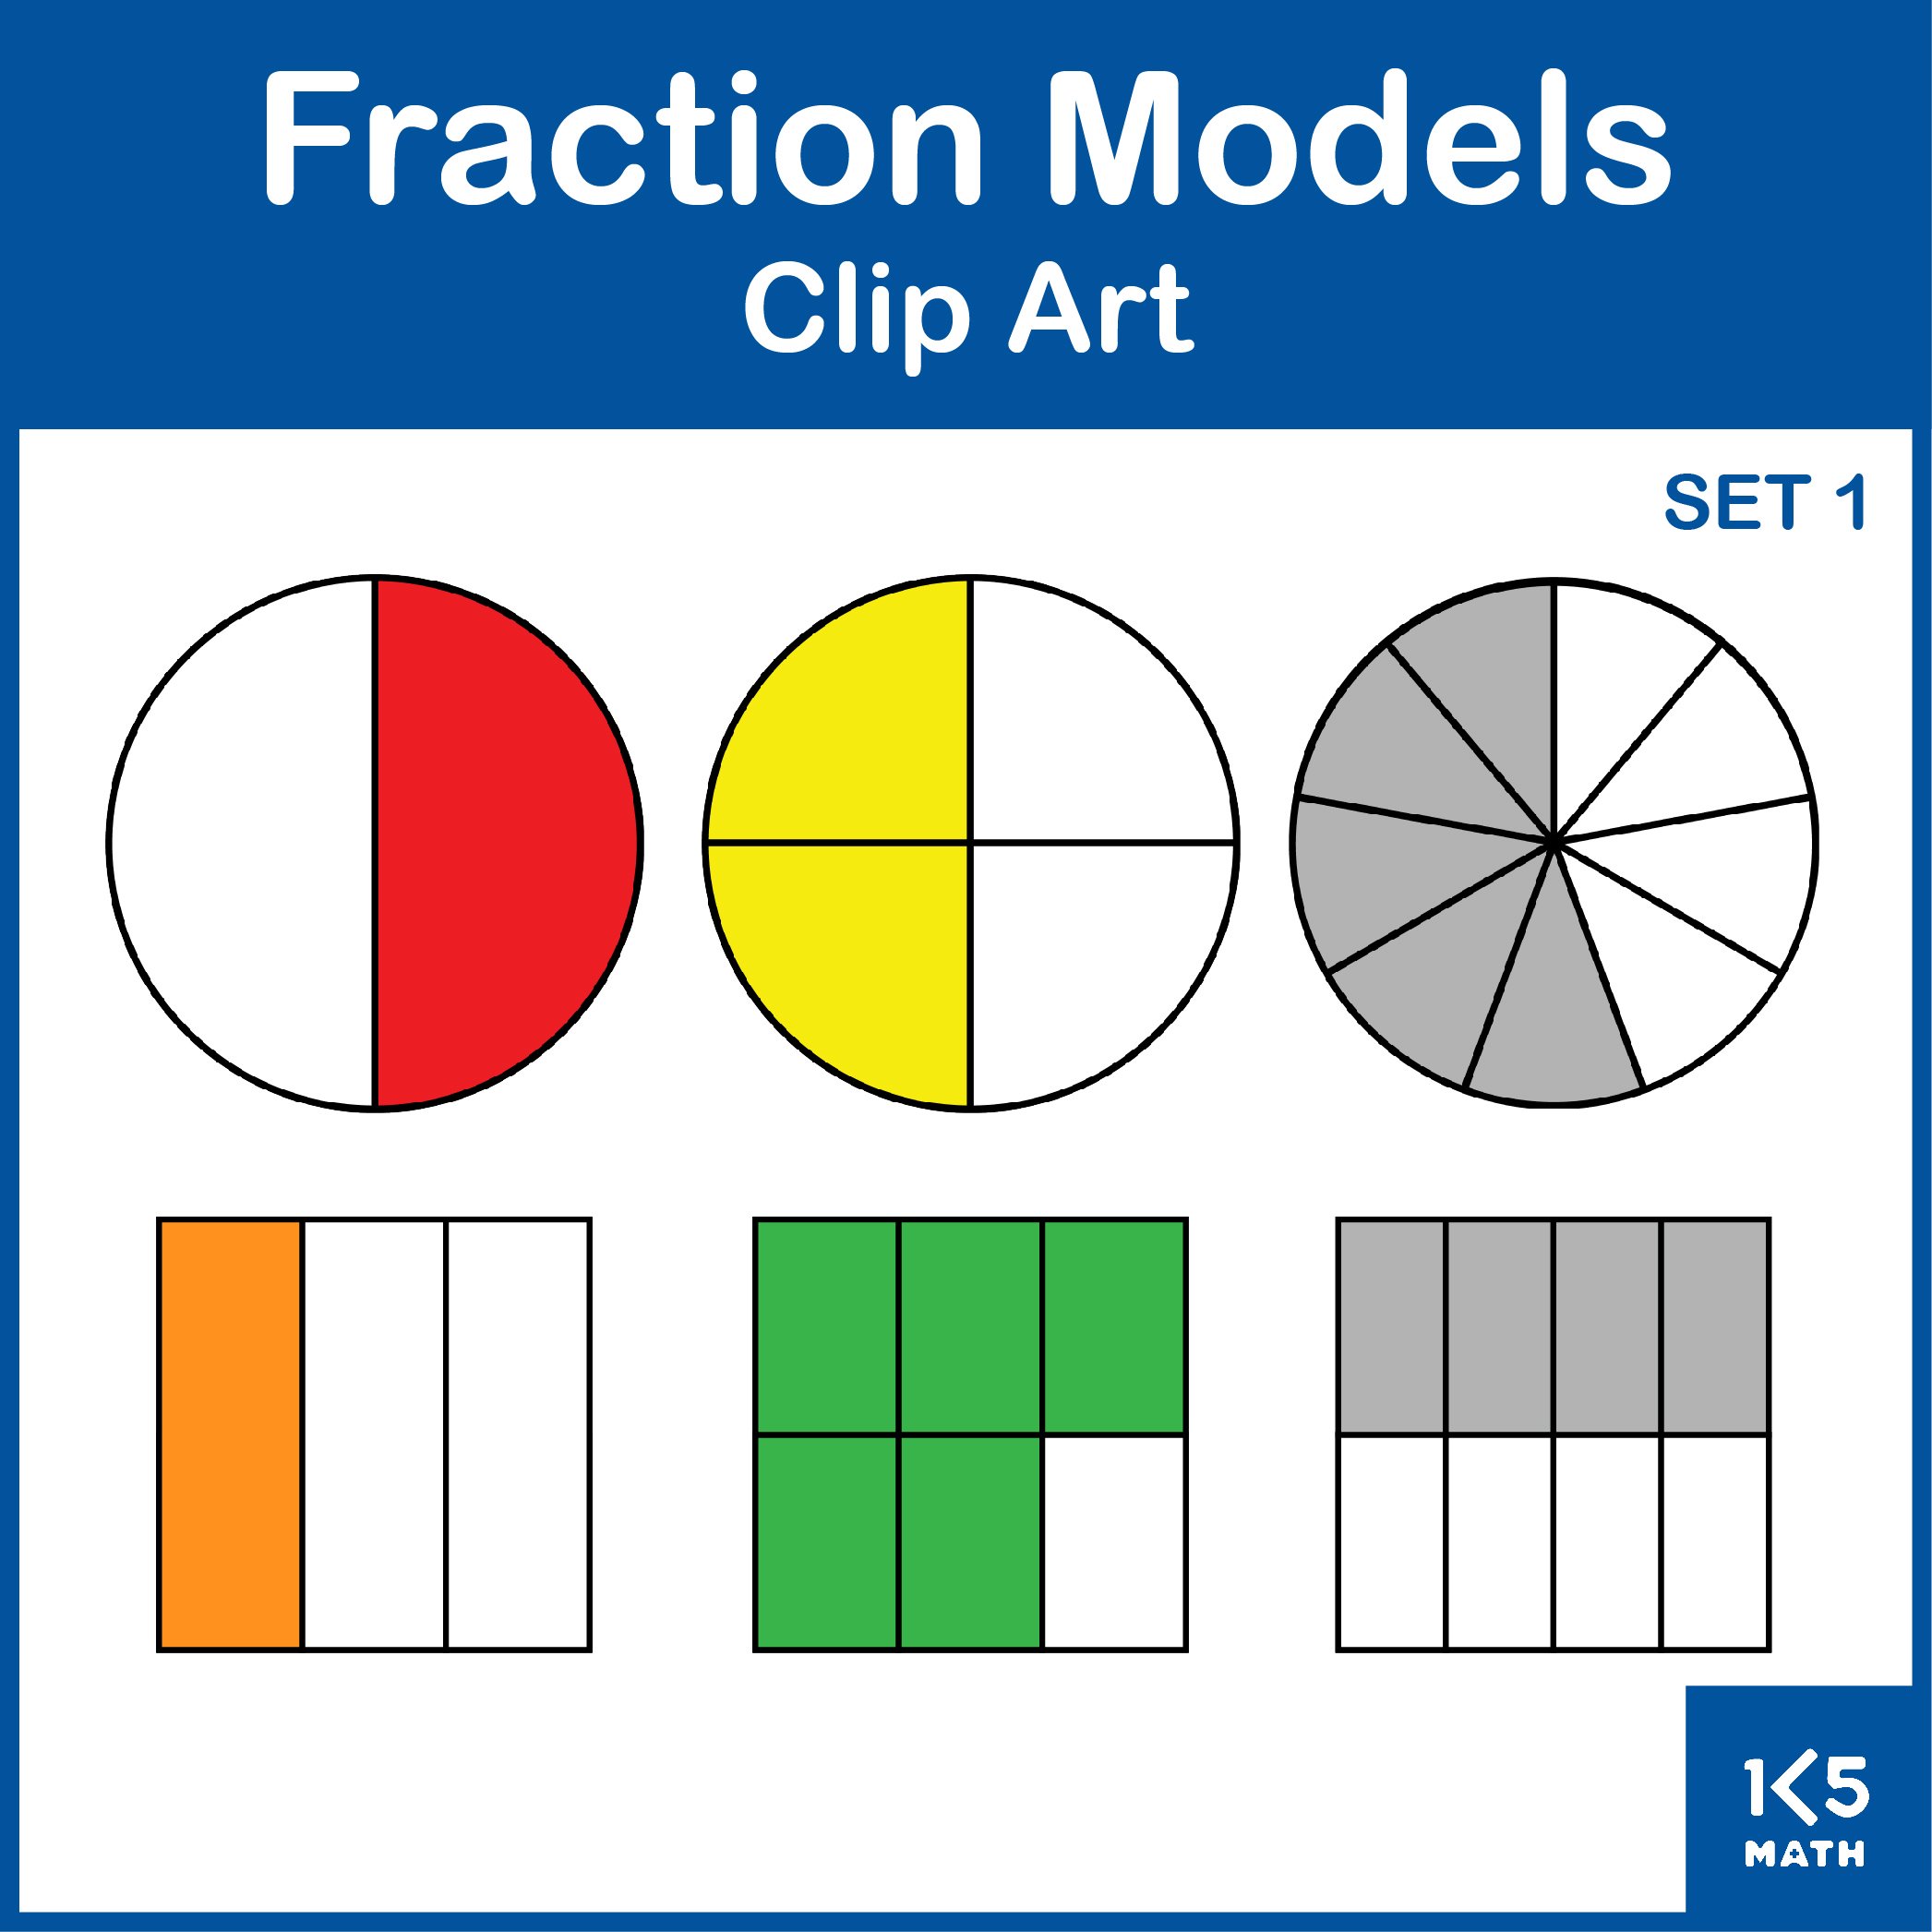 Fraction Models: Set 1 Clip Art